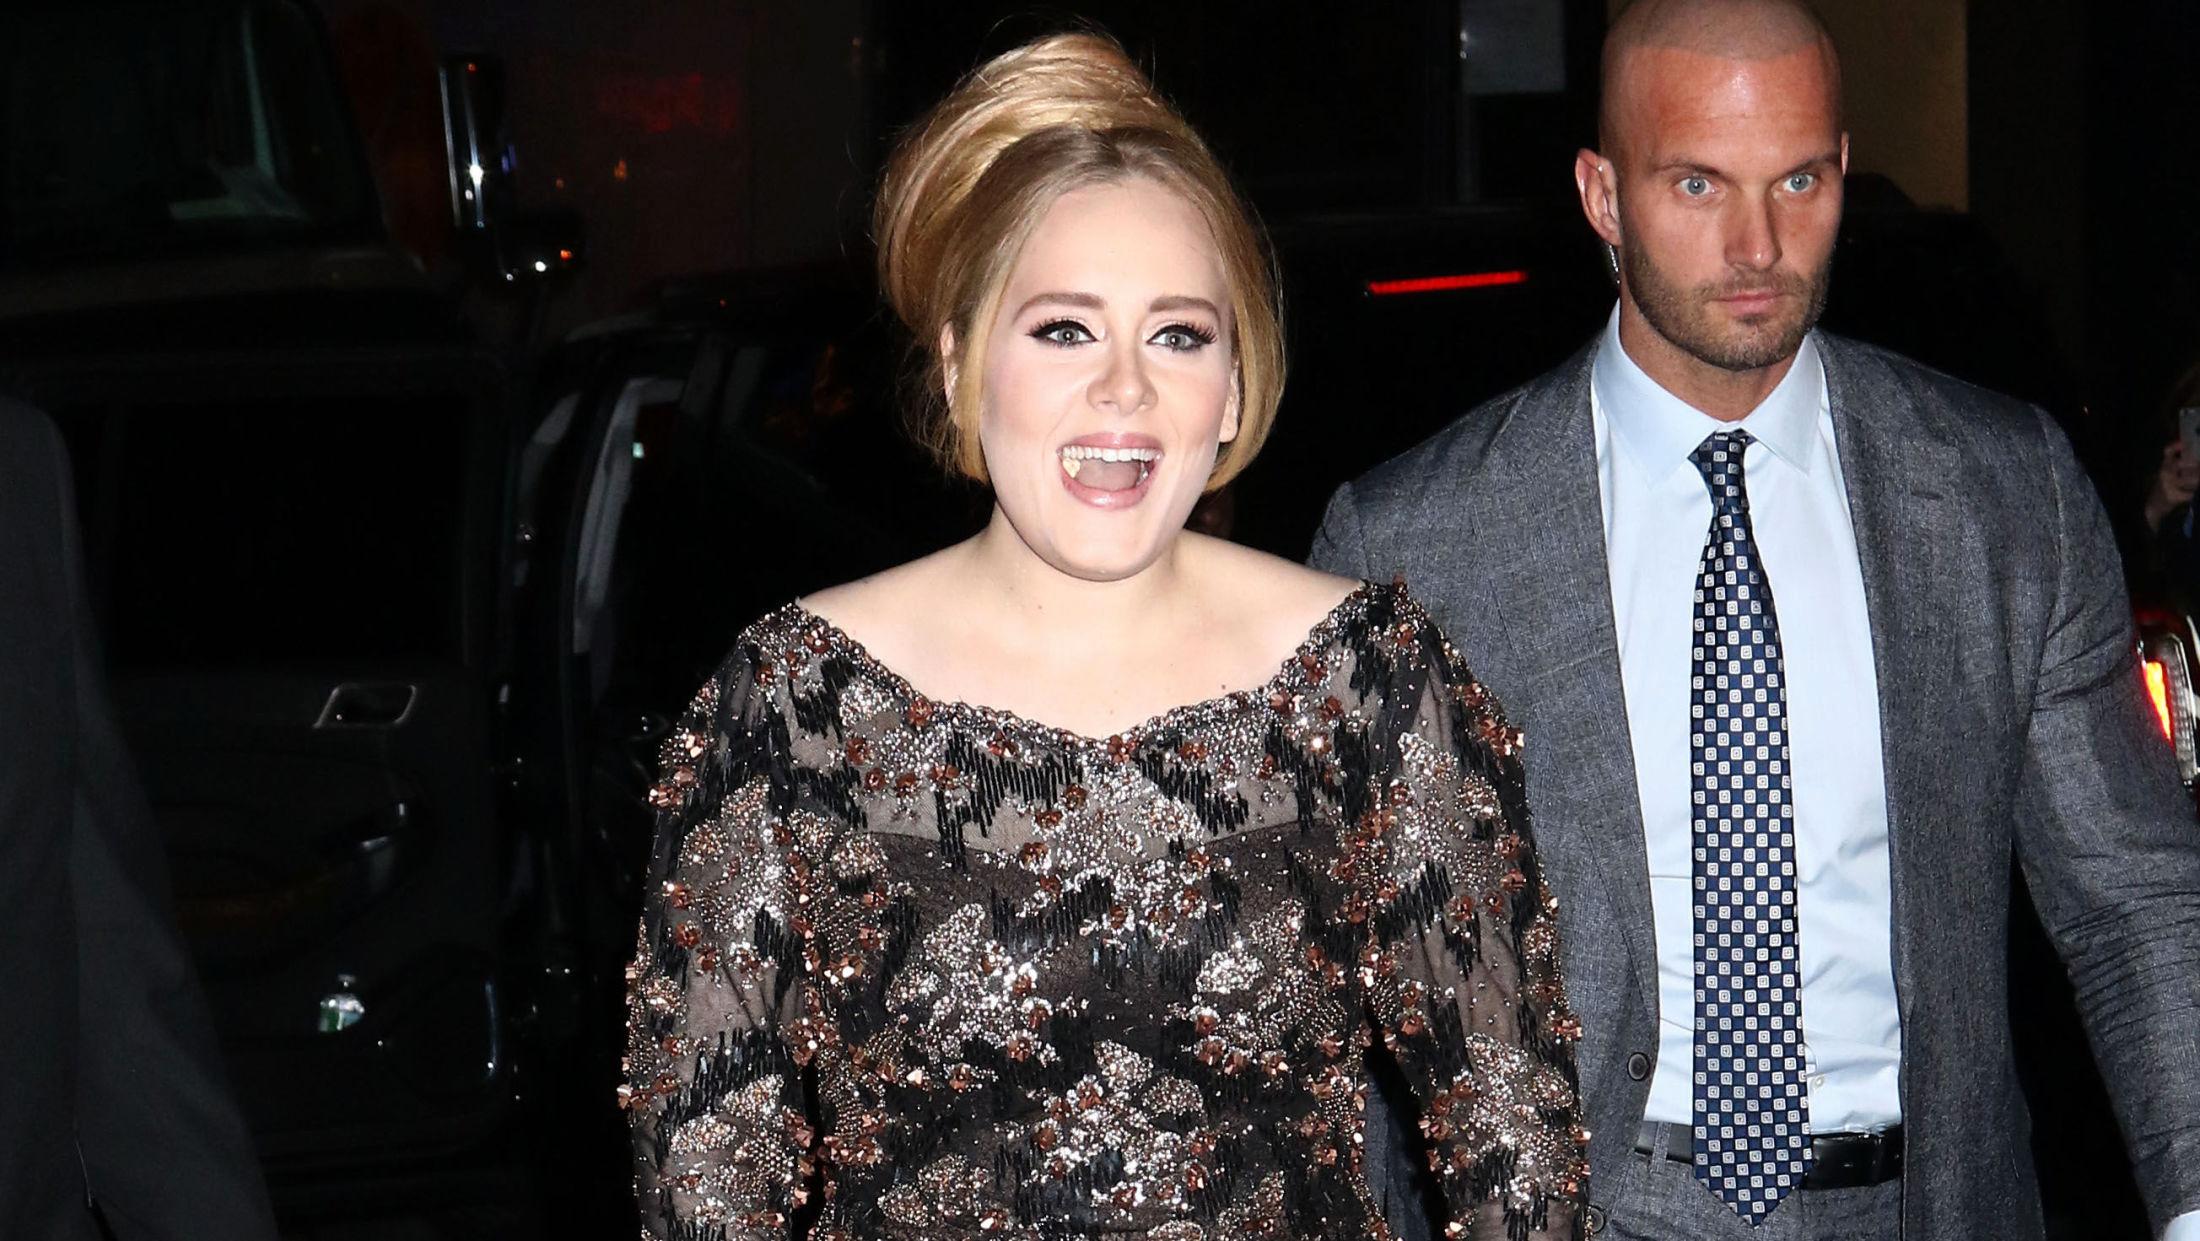 2015: Adele viser ser sjeldent i offentligheten. Her er hun avbildet i 2015 i forbindelse med en konsert hun holdt i New York. Foto: NTB scanpix